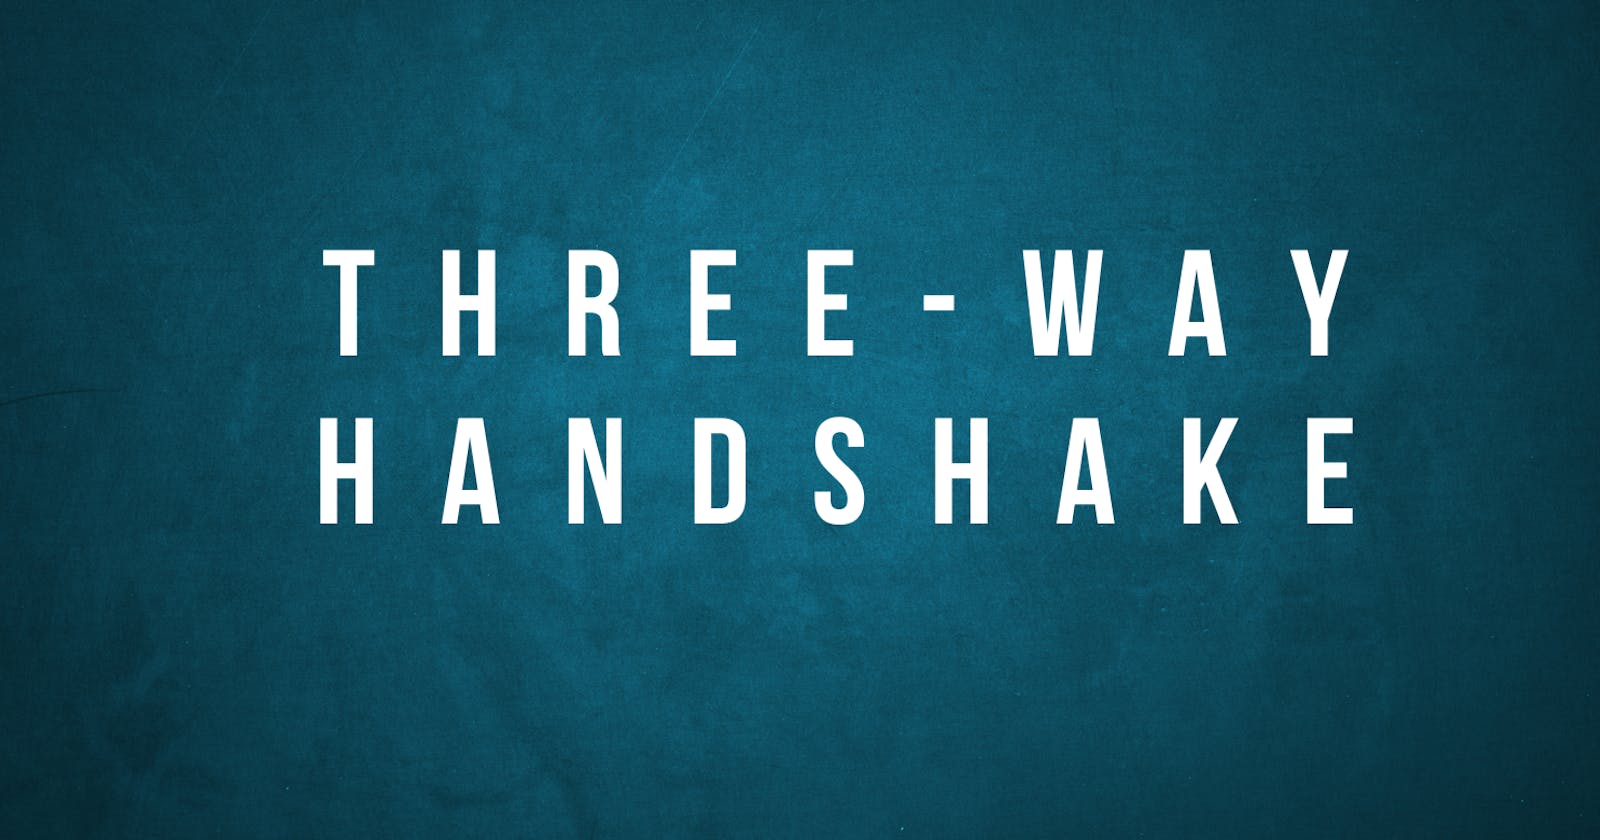 The Three-way handshake